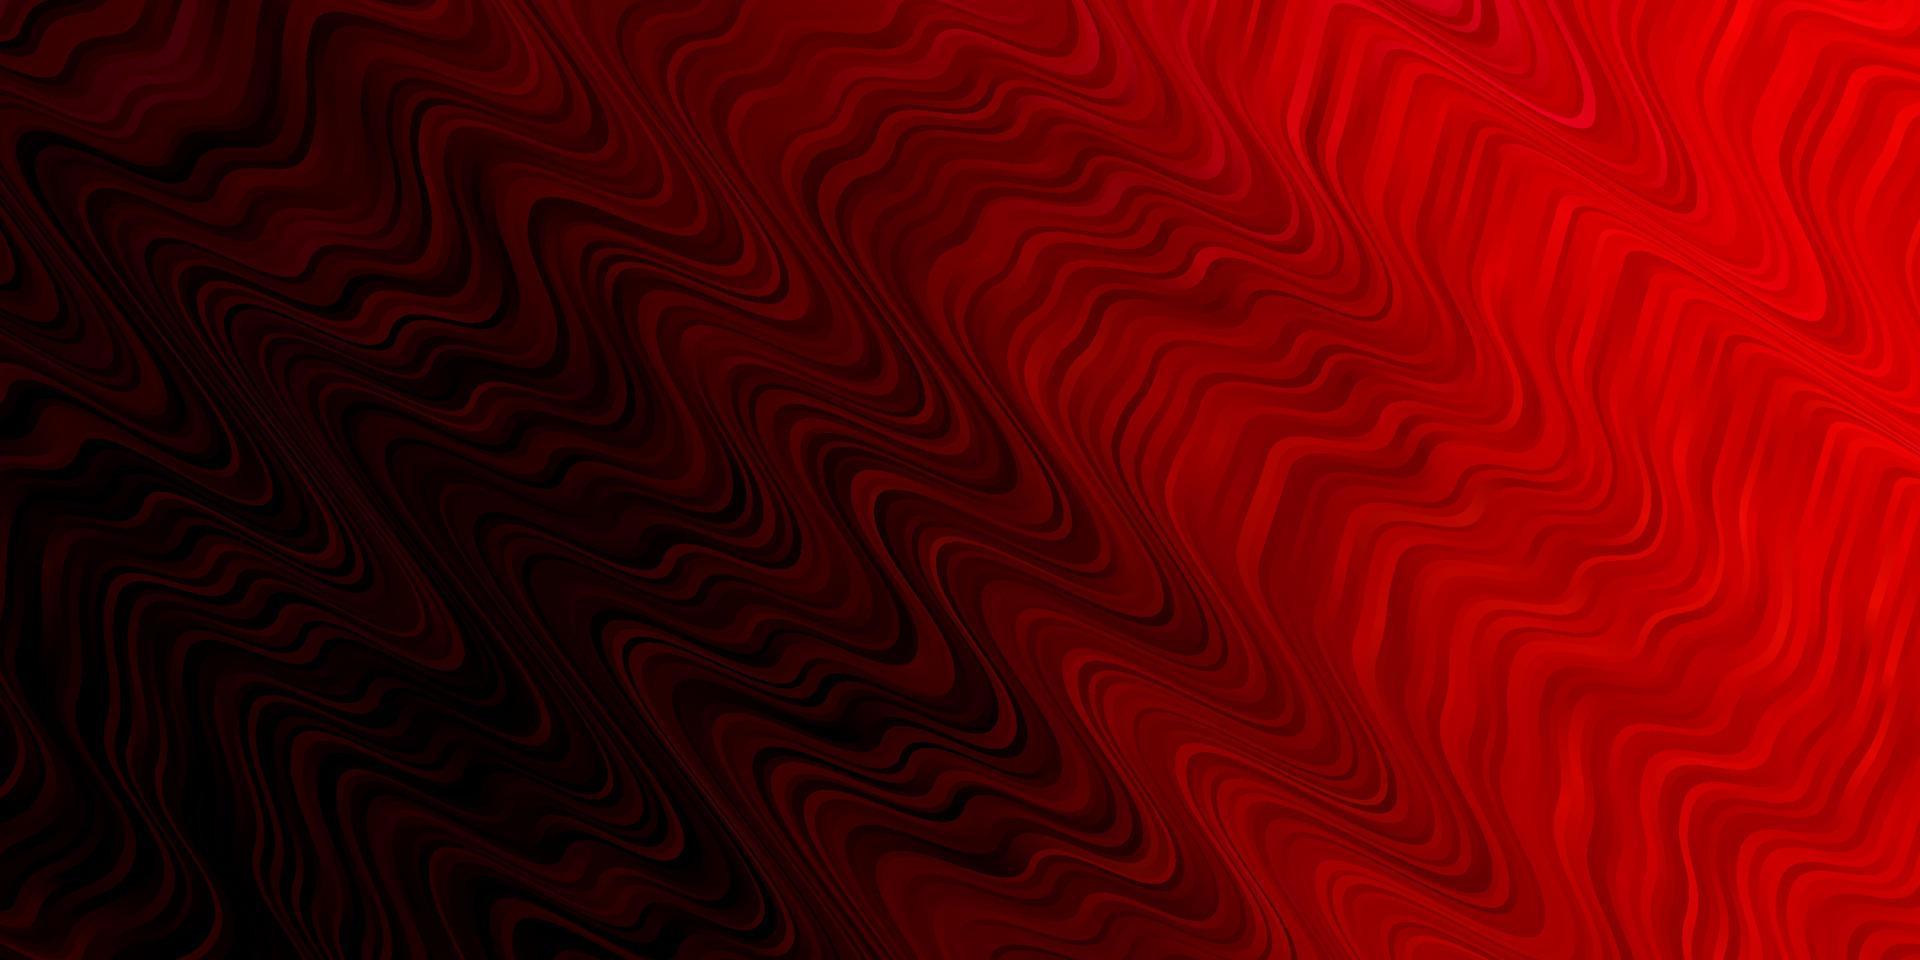 ljusrosa, röd vektorbakgrund med linjer. vektor